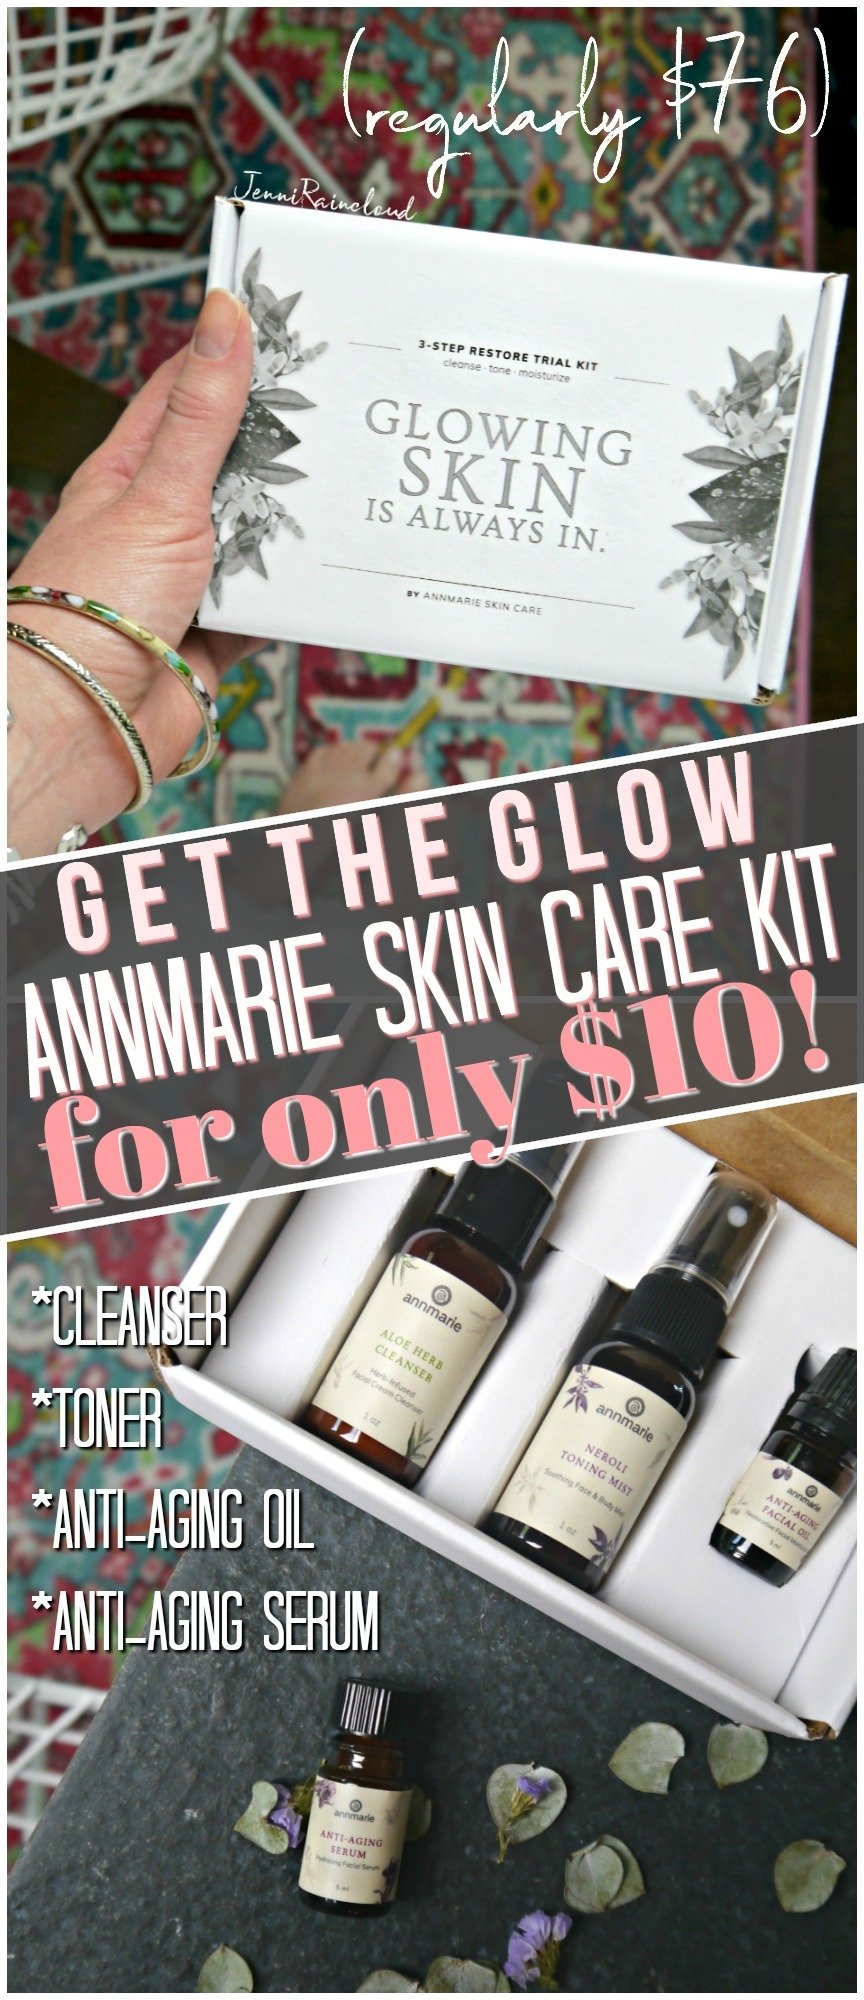 Annmarie Skin Care Detox Kit